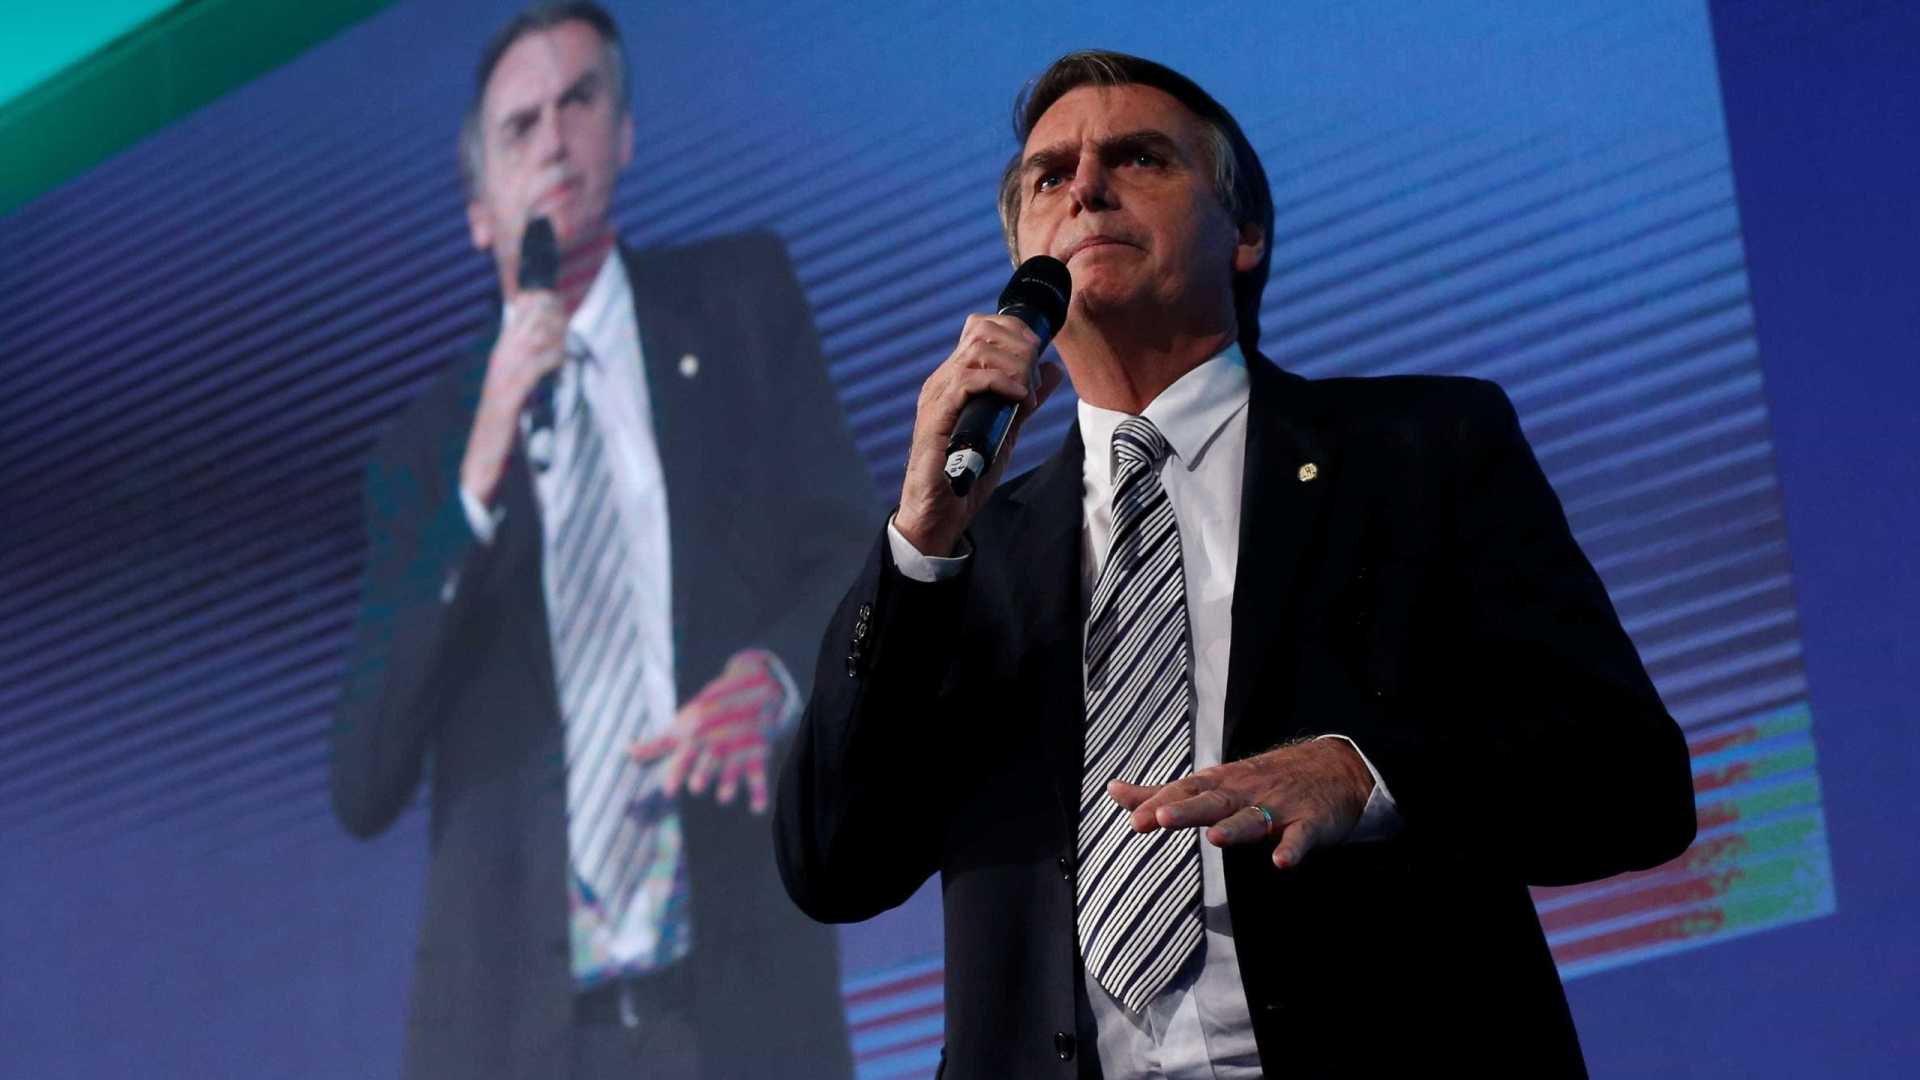 Após fala de apóstolo, Bolsonaro diz que também é contra o ódio